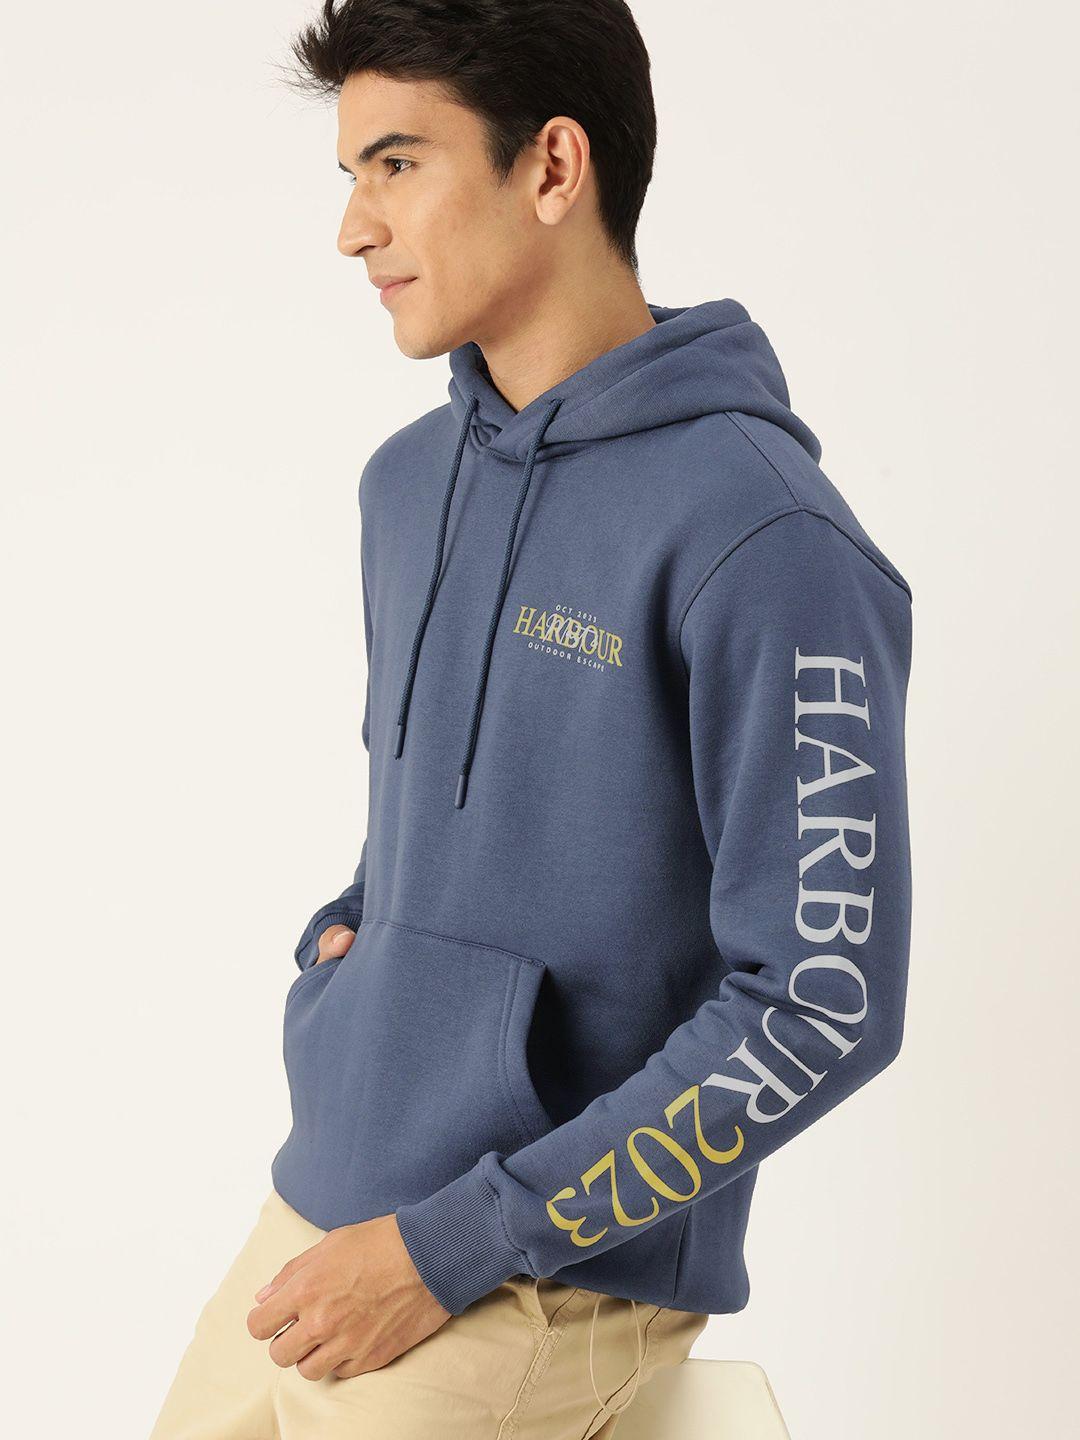 mast & harbour men printed detail hooded sweatshirt